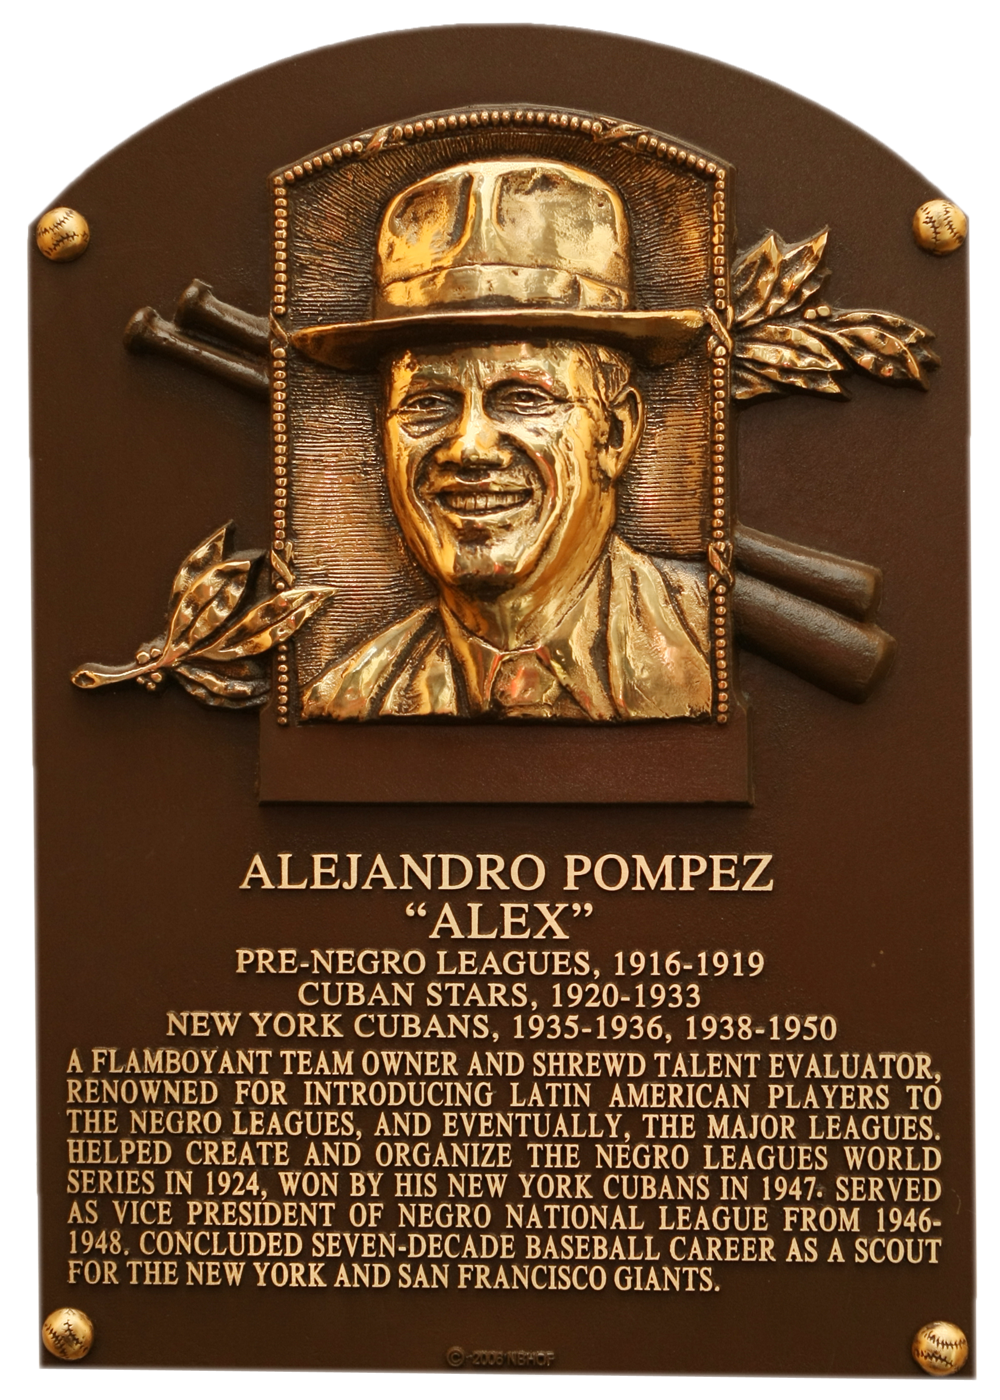 Alex Pompez Hall of Fame plaque